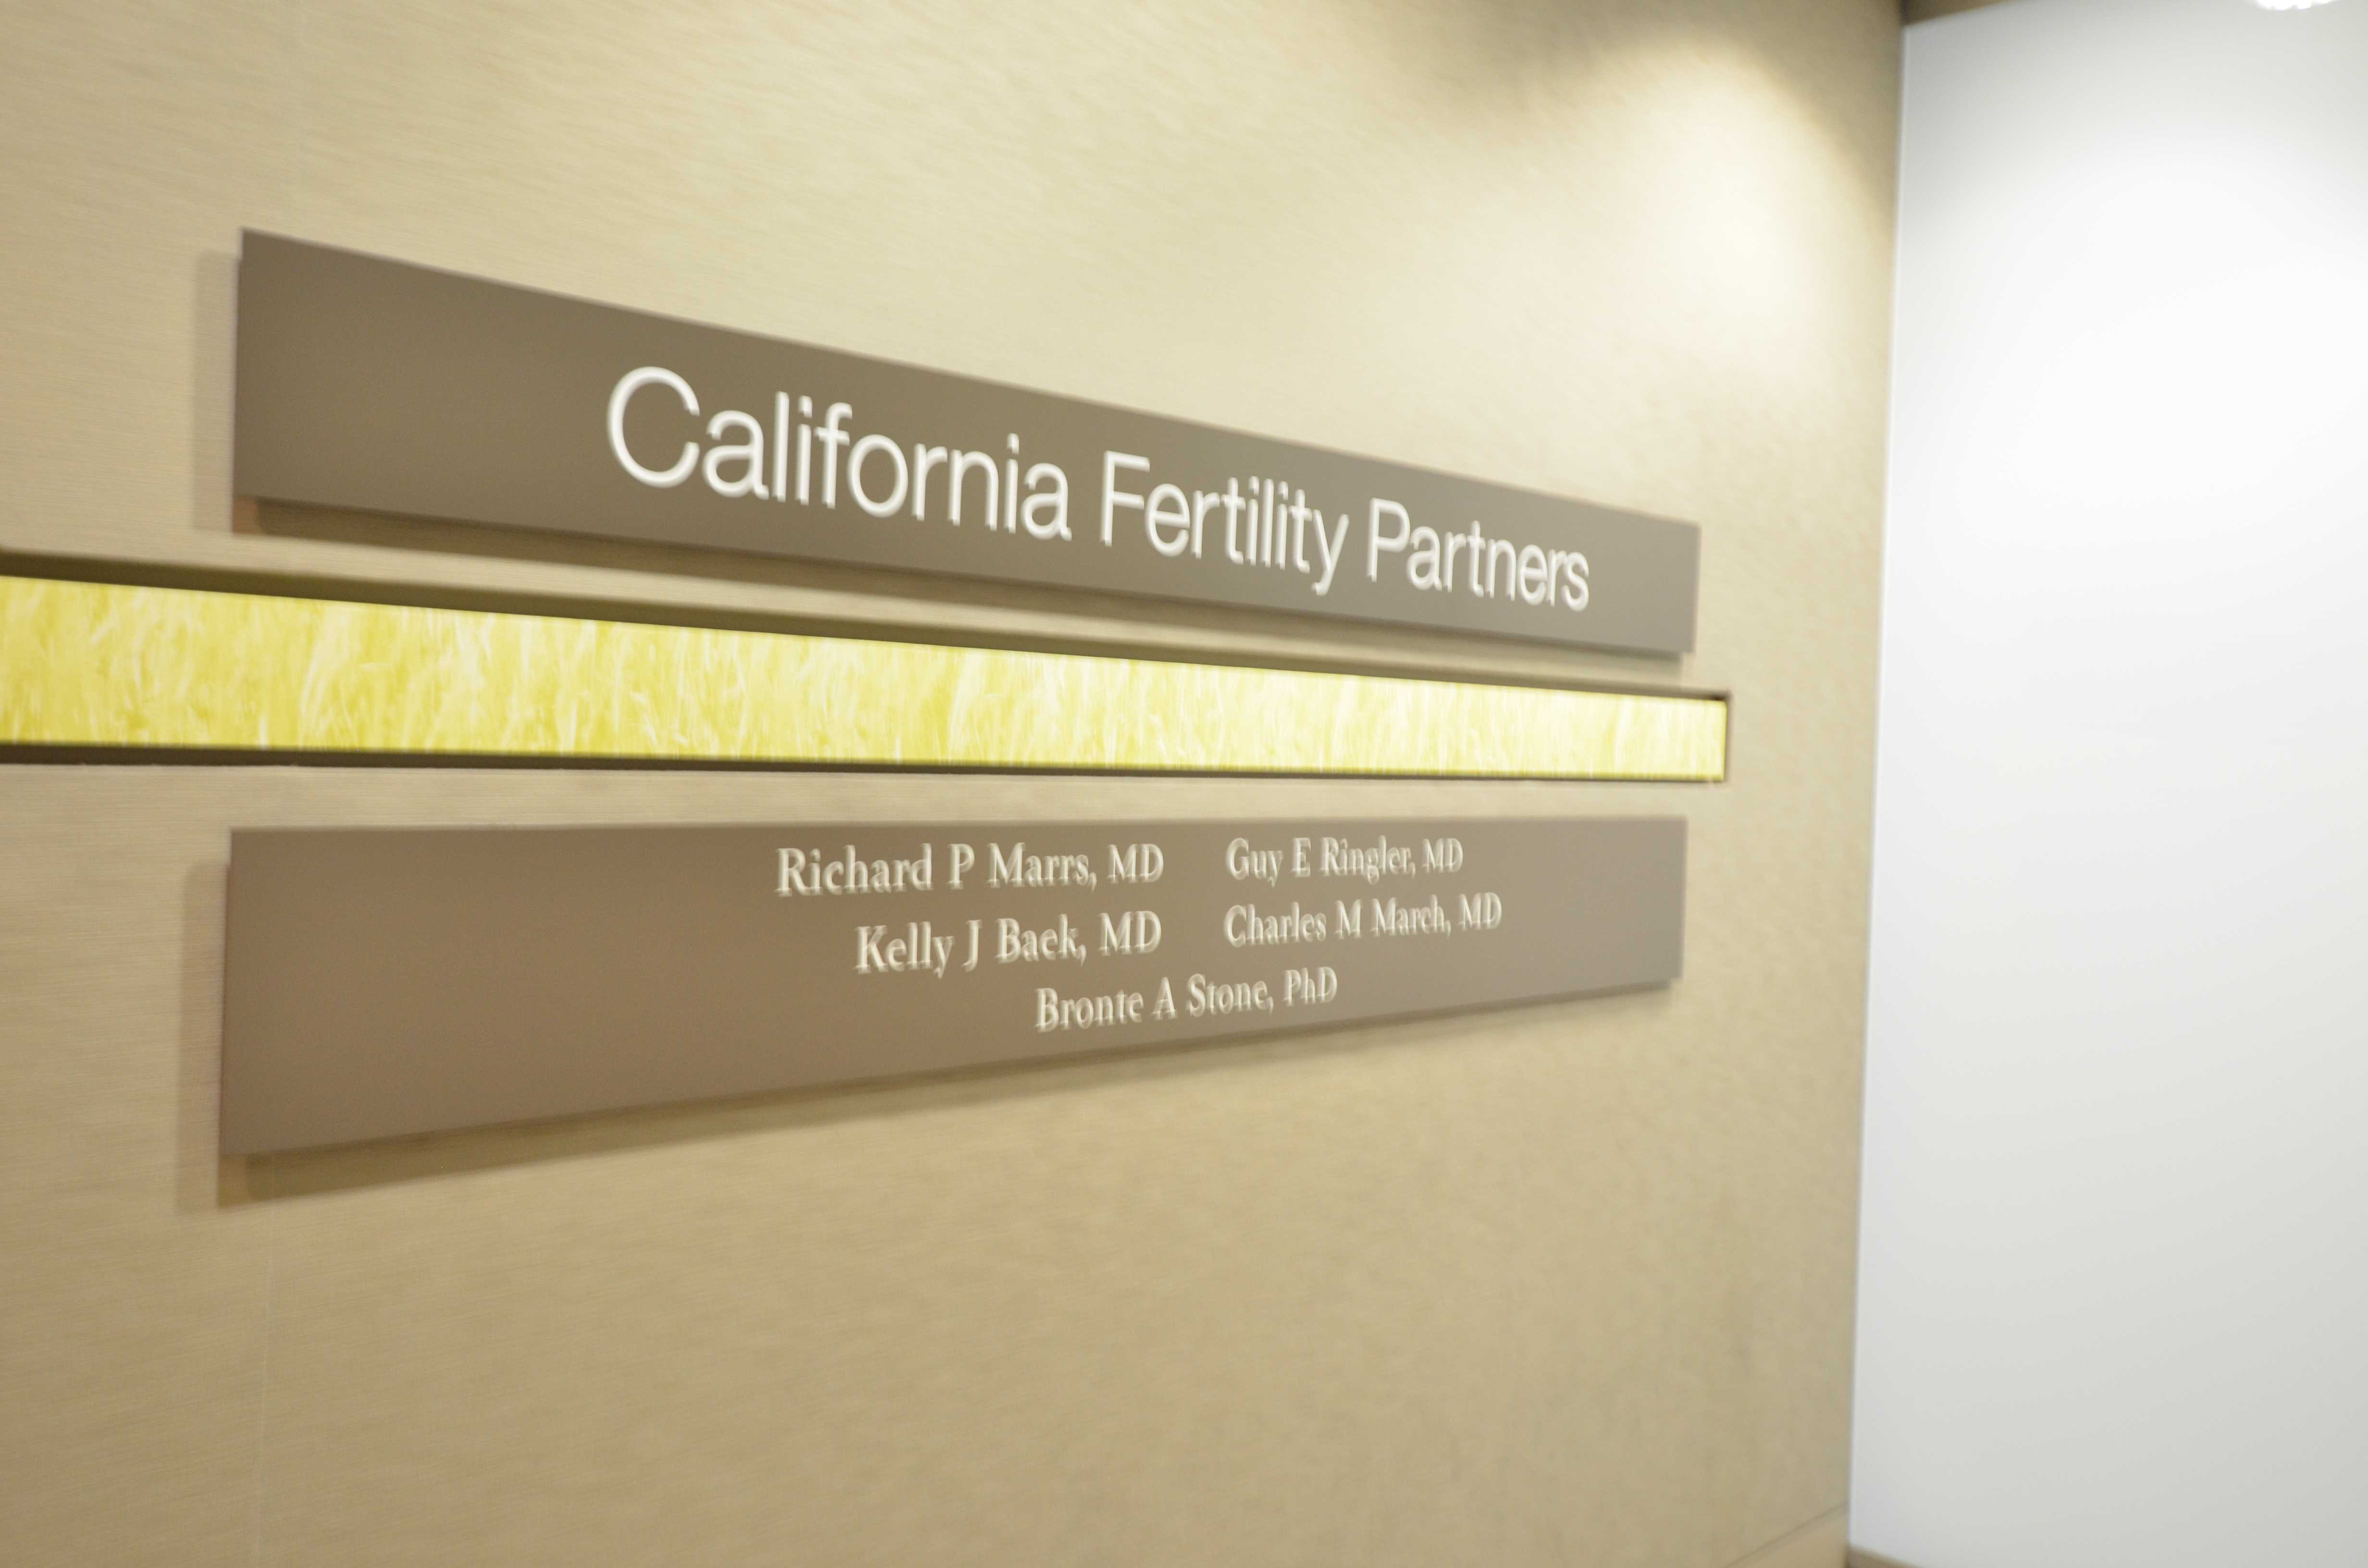  加利福尼亚生殖中心（CFP）是一家专门诊断和治疗男女生育问题的专科诊所。CFP 的医生是在生殖内分泌及不 孕不育治疗领域最顶尖的专家，有着超过 30 年的科研和临床治疗经验。CFP 的宗旨是为患者提供最全面、最贴 心的生殖医疗服务。